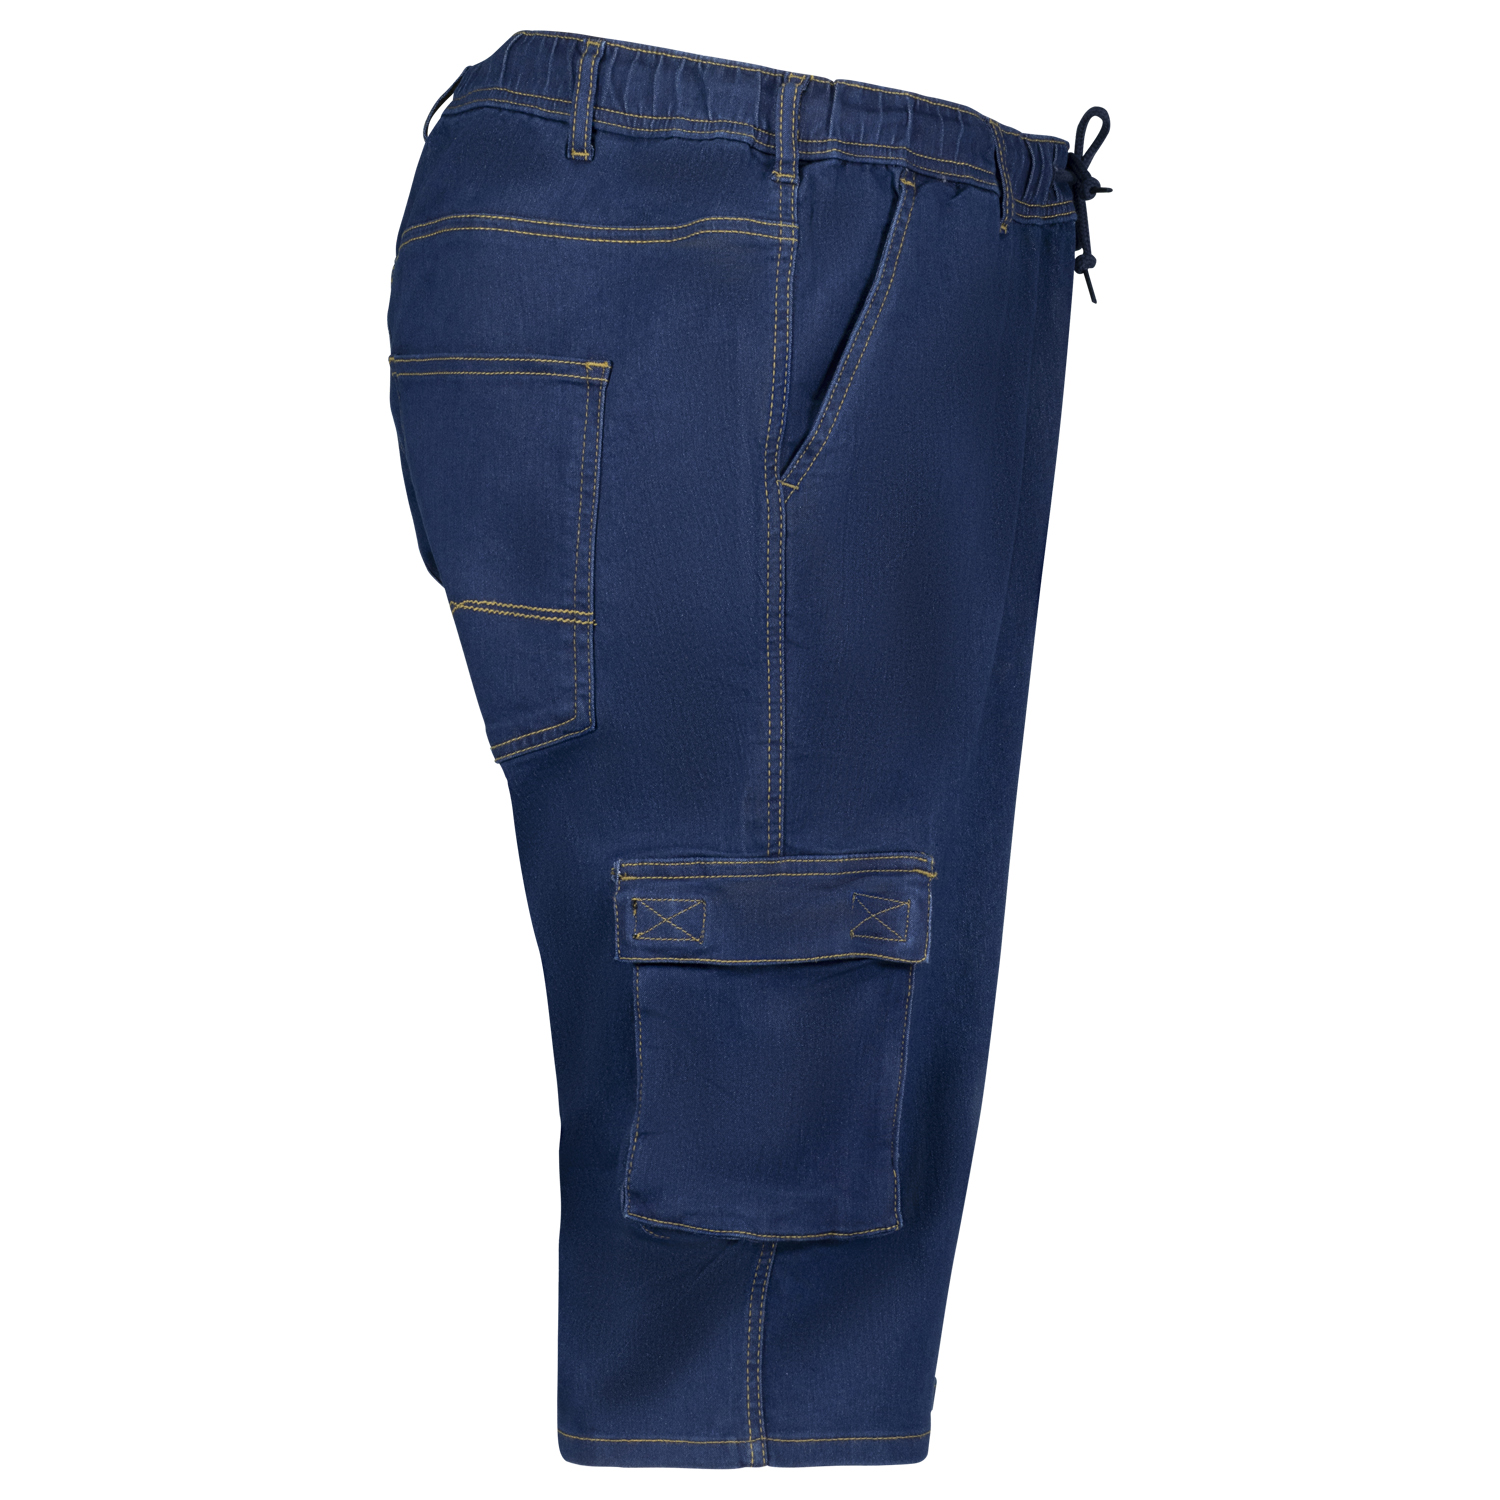 Übergrößen Jeans Jogging Caprihose Serie "Dalles" für Herren in 2XL-12XL navy von Adamo